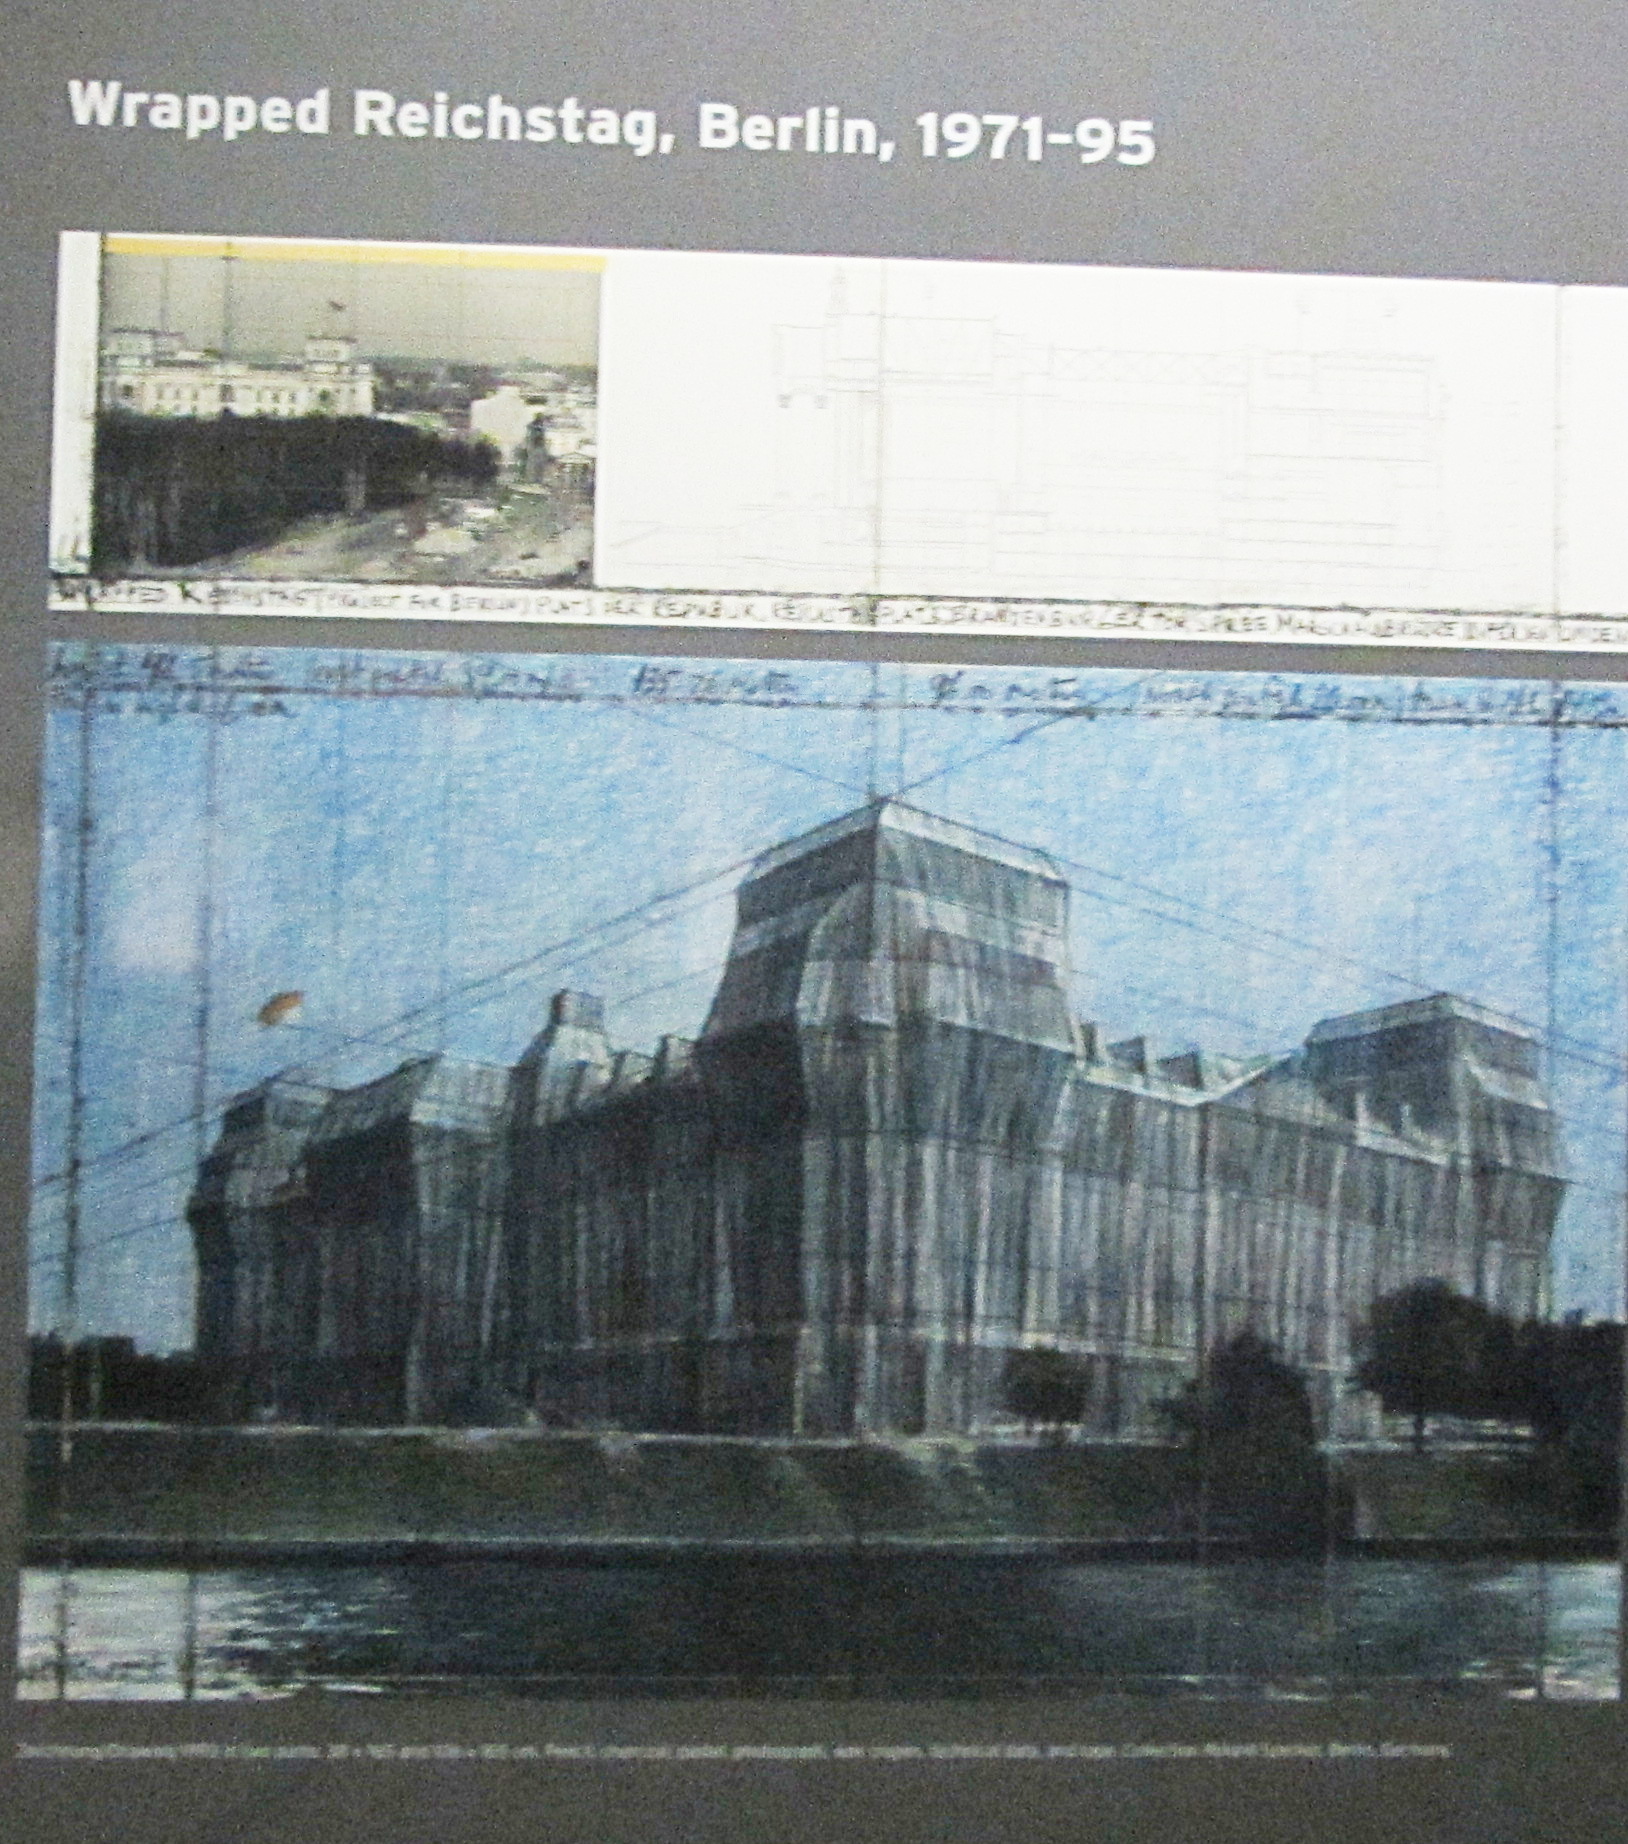 Der eingepackte Reichstag